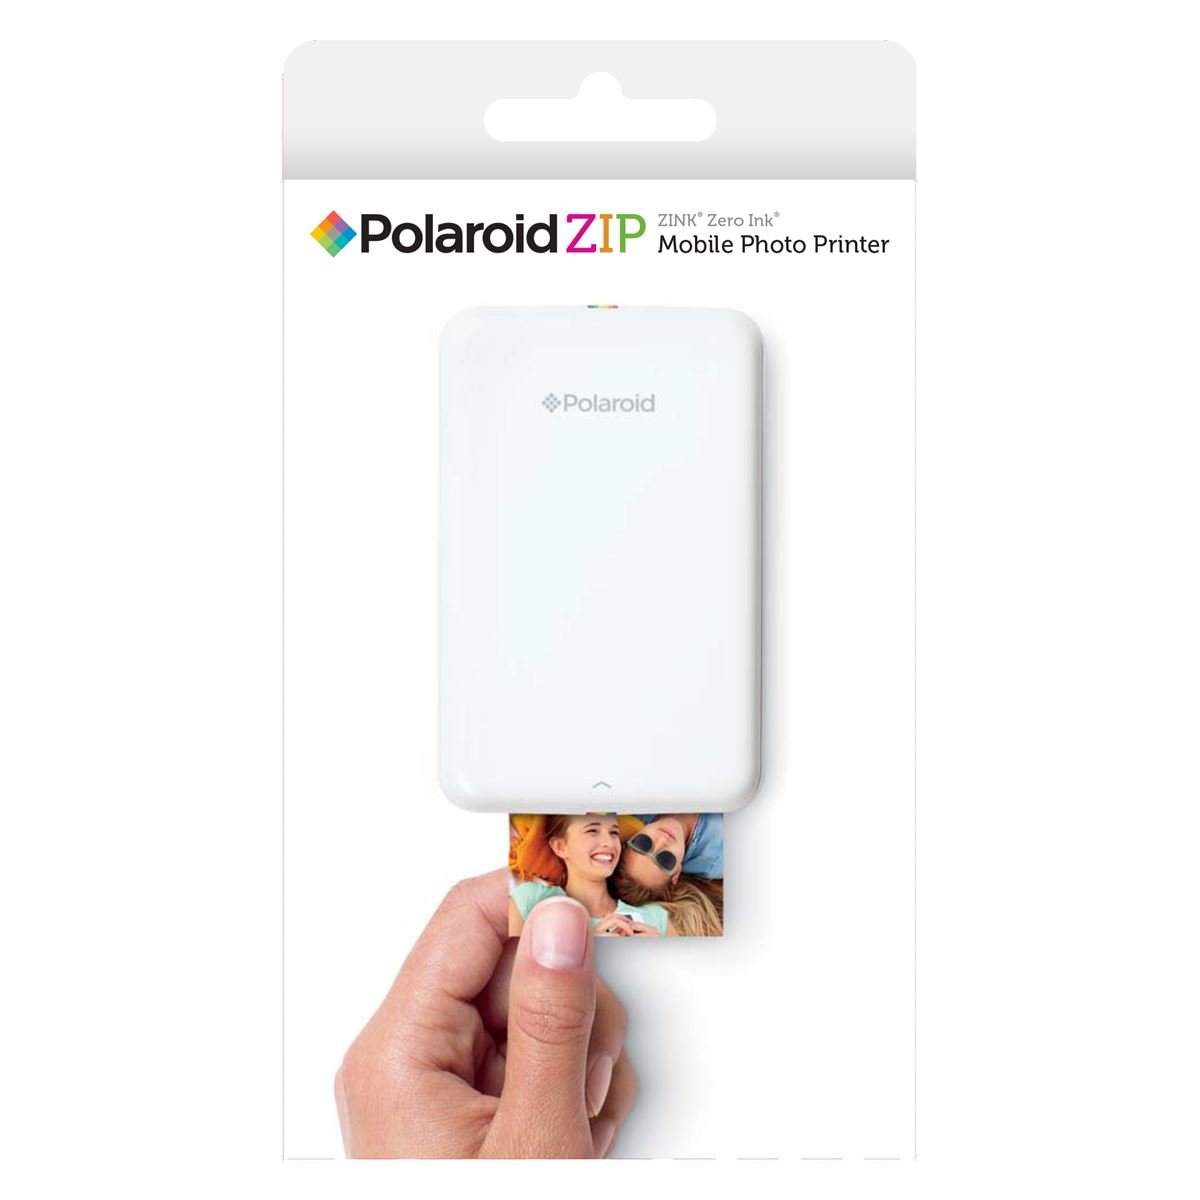 Polaroid Zip - Impresora fotográfica portátil